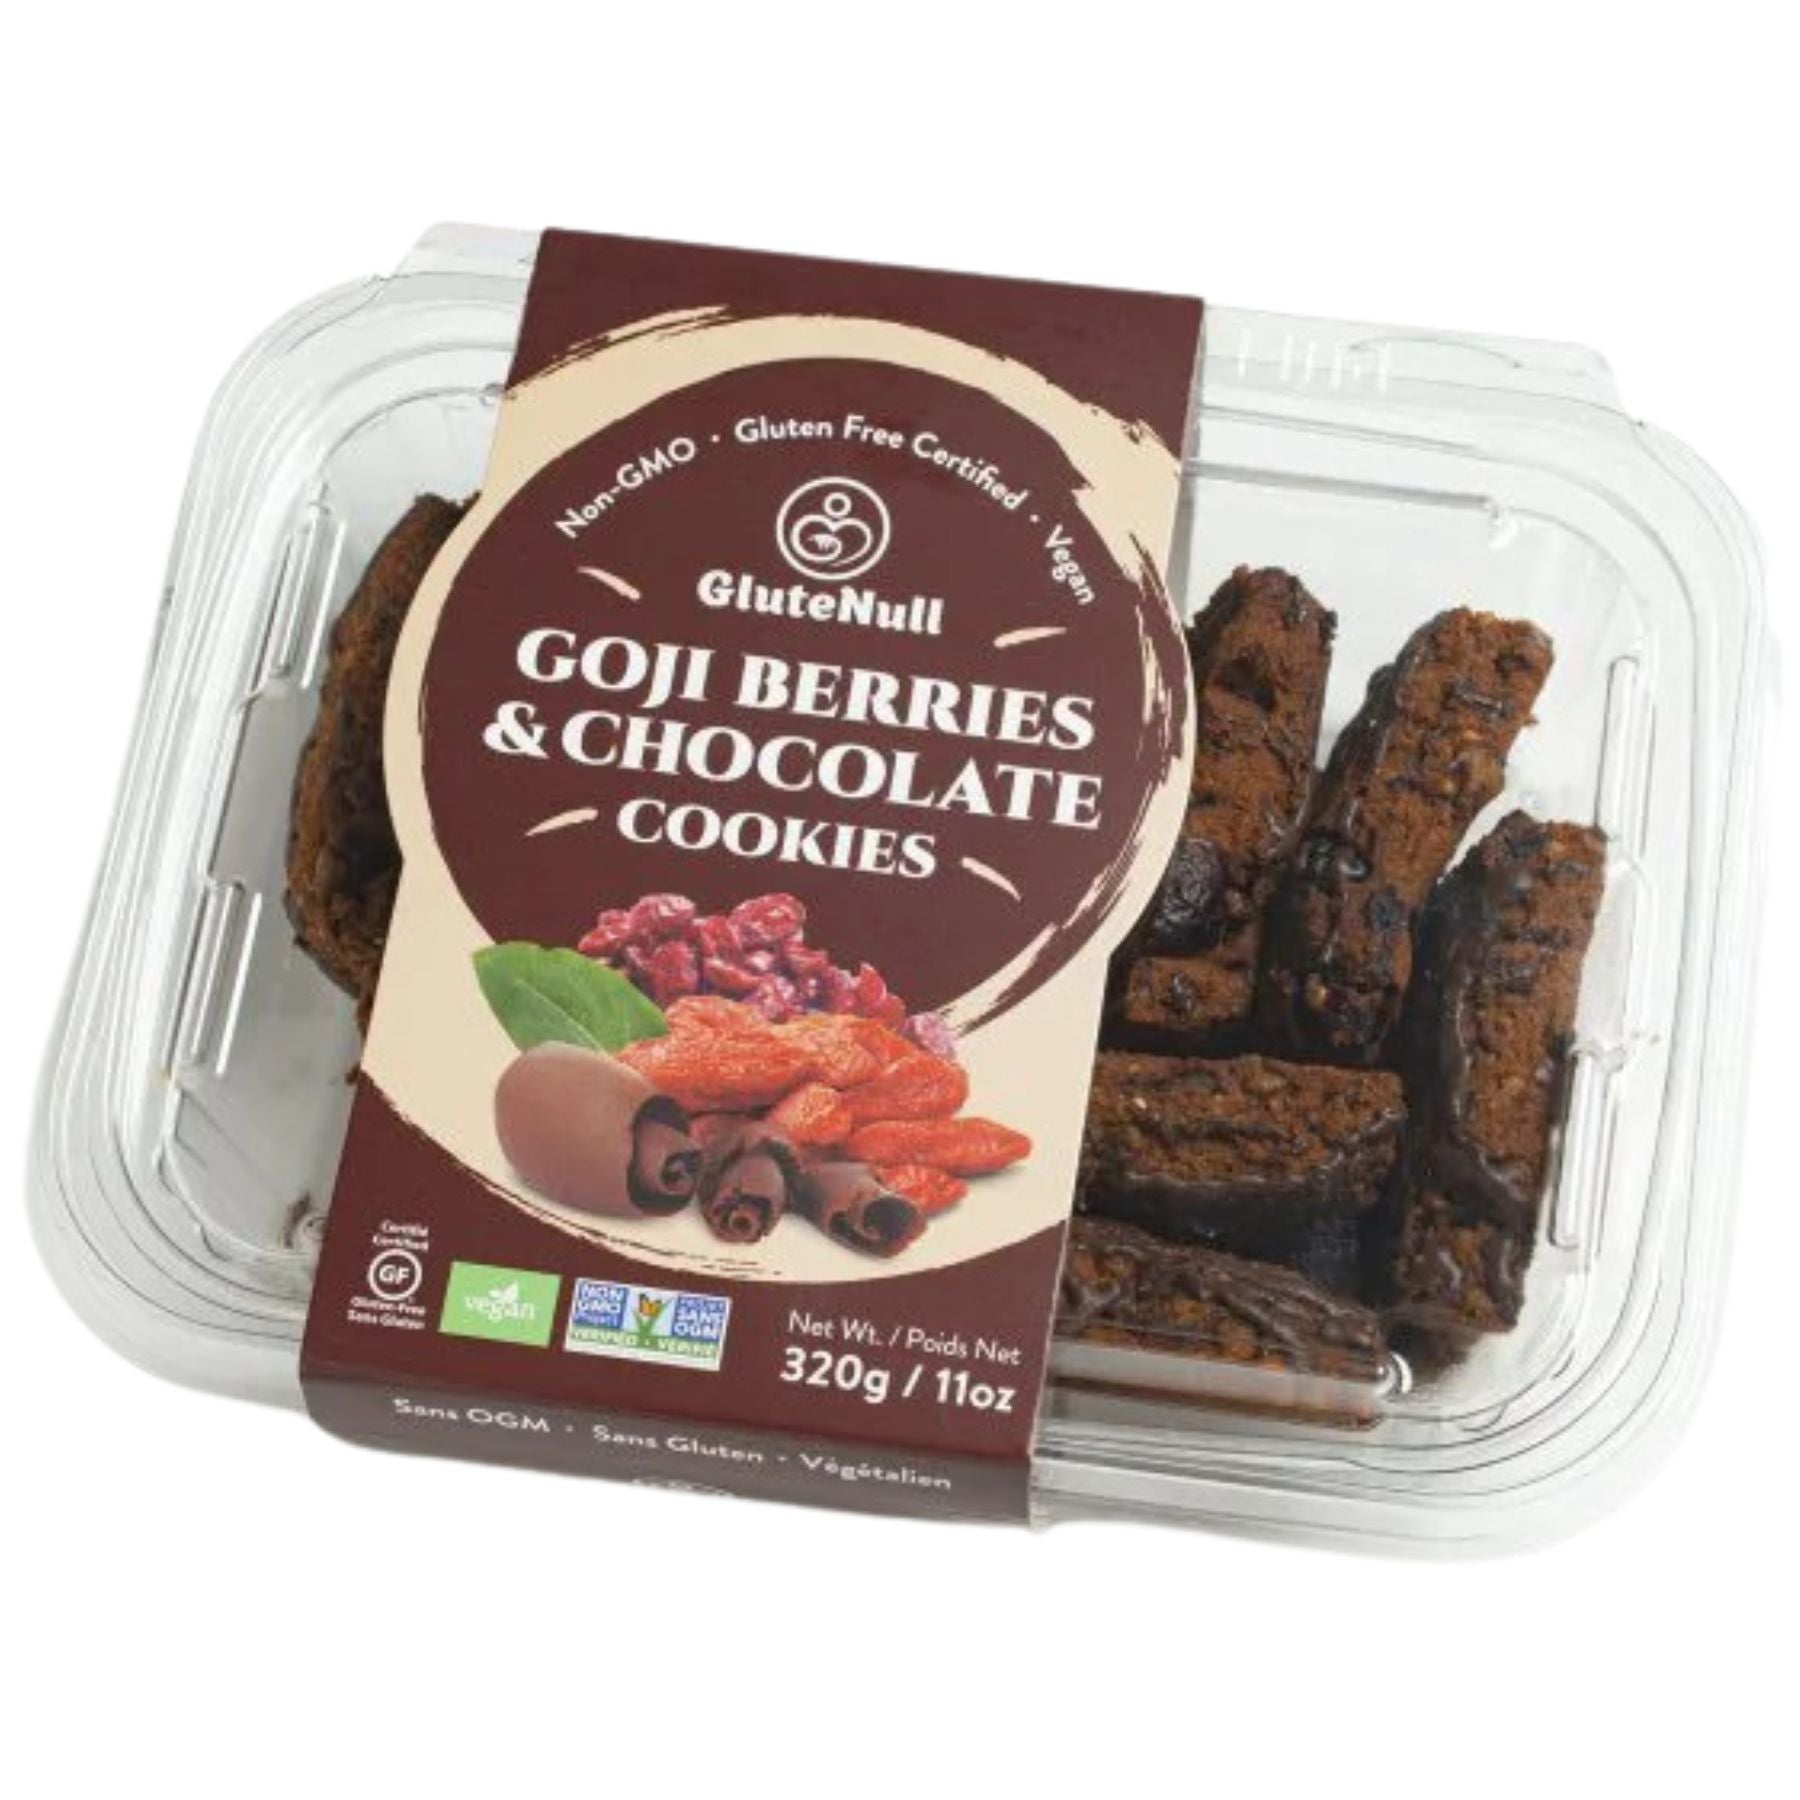 Glutenull Goji Berries & Chocolate Cookies 320g